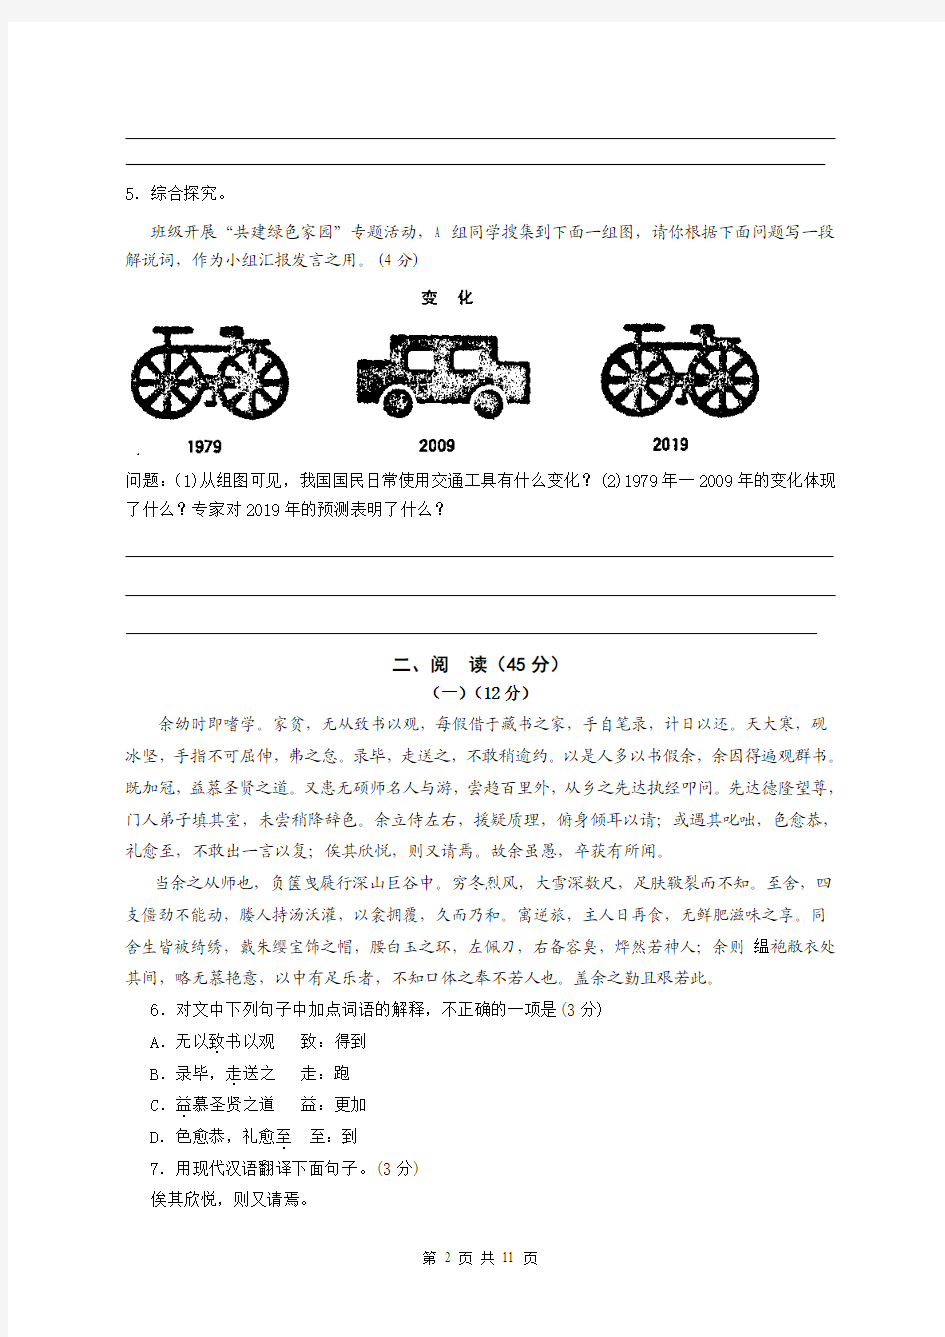 张静中学2011年中考语文最新模拟试卷1